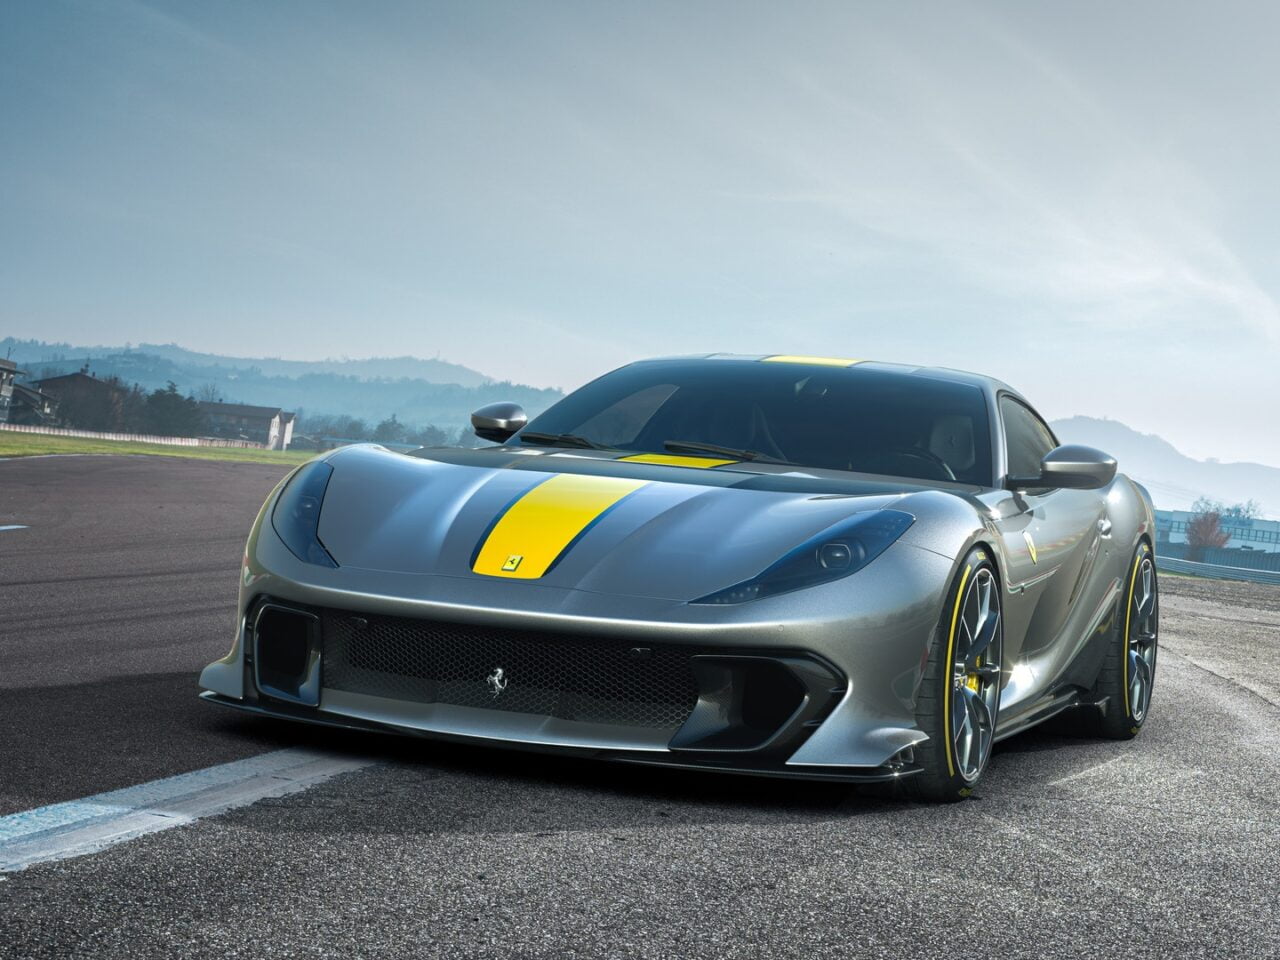 Szary samochód sportowy marki Ferrari z żółtymi akcentami, zaparkowany na asfaltowym torze wyścigowym.